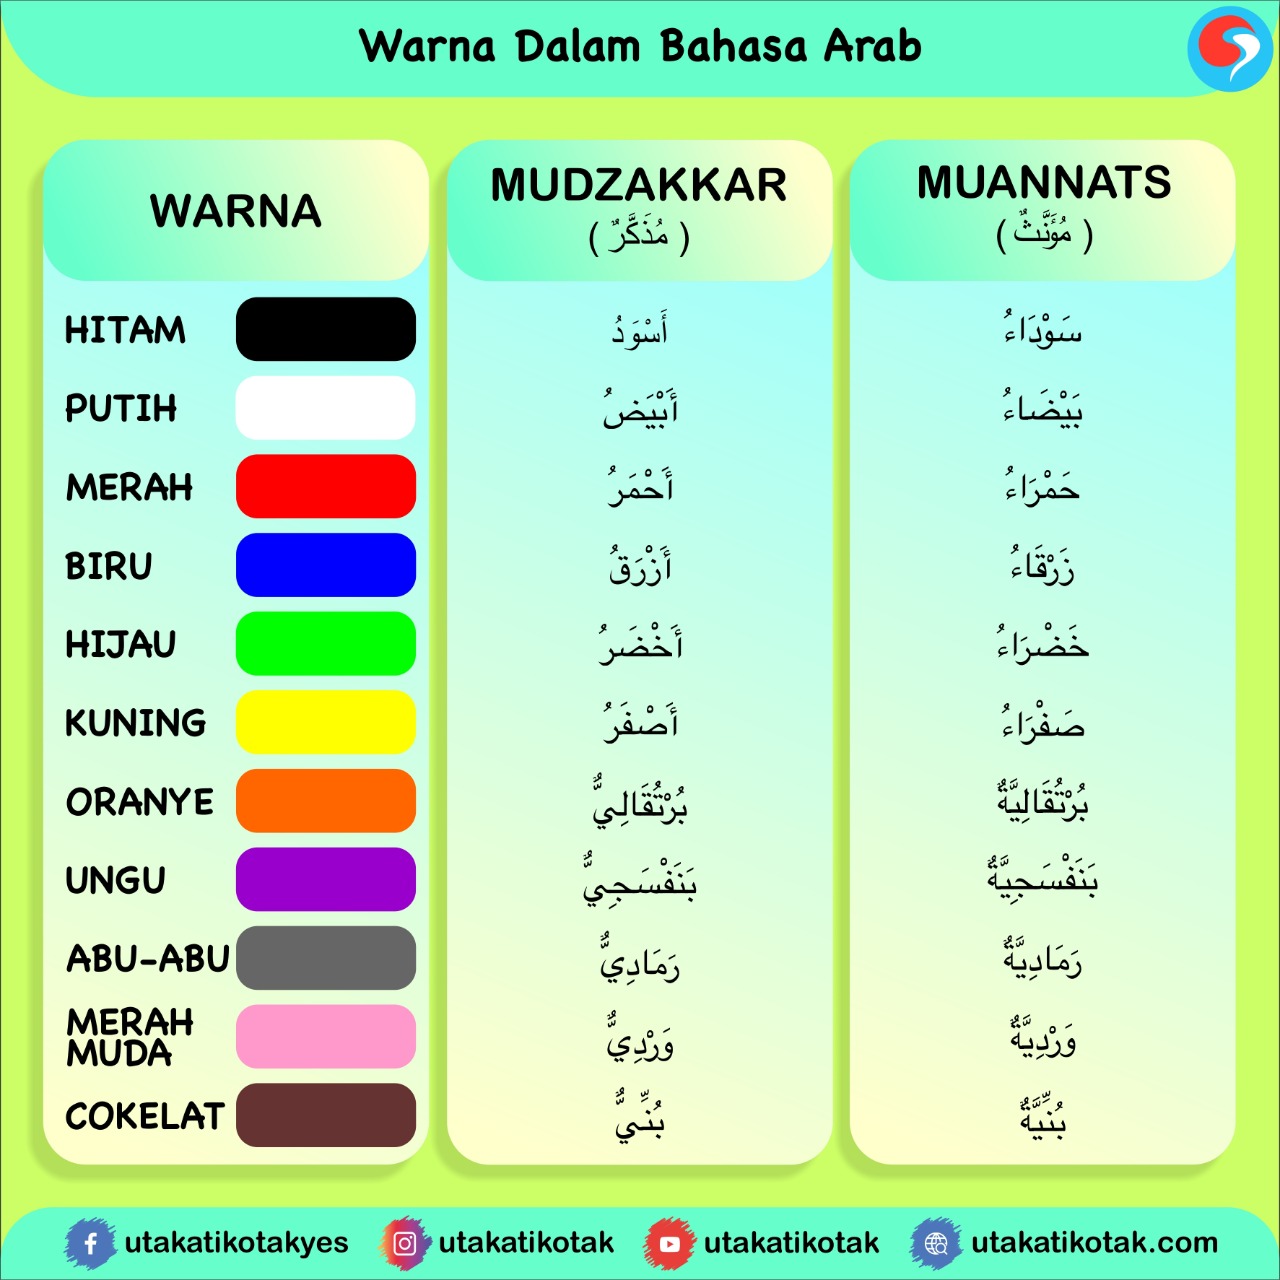 Kumpulan Kosa kata Bahasa Arab untuk Namanama Warna